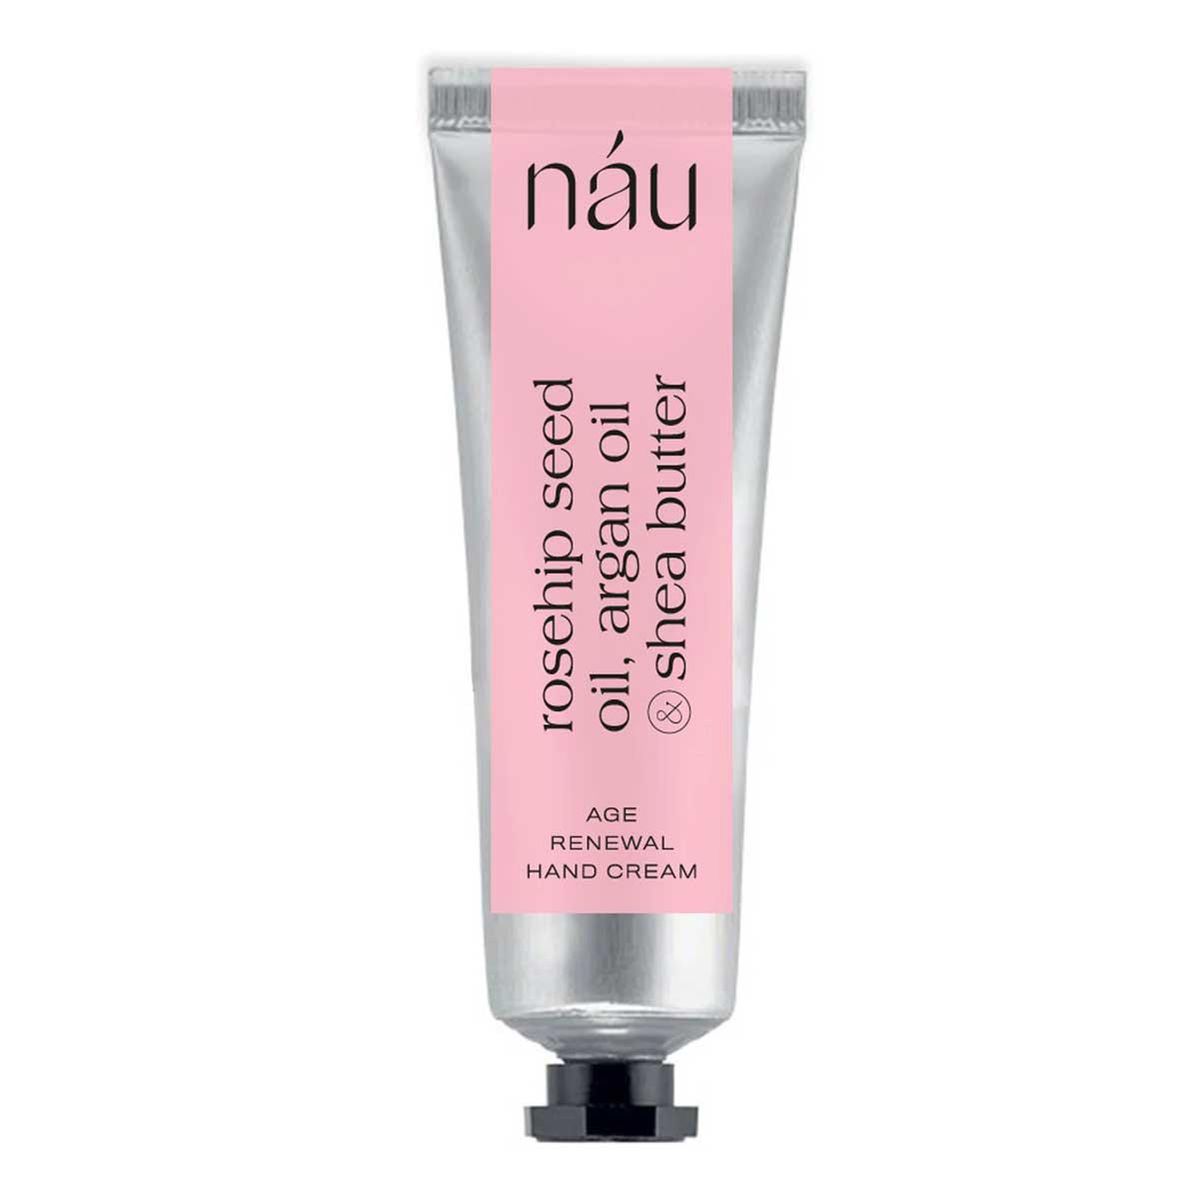 nau overnight rejuvenating face cream